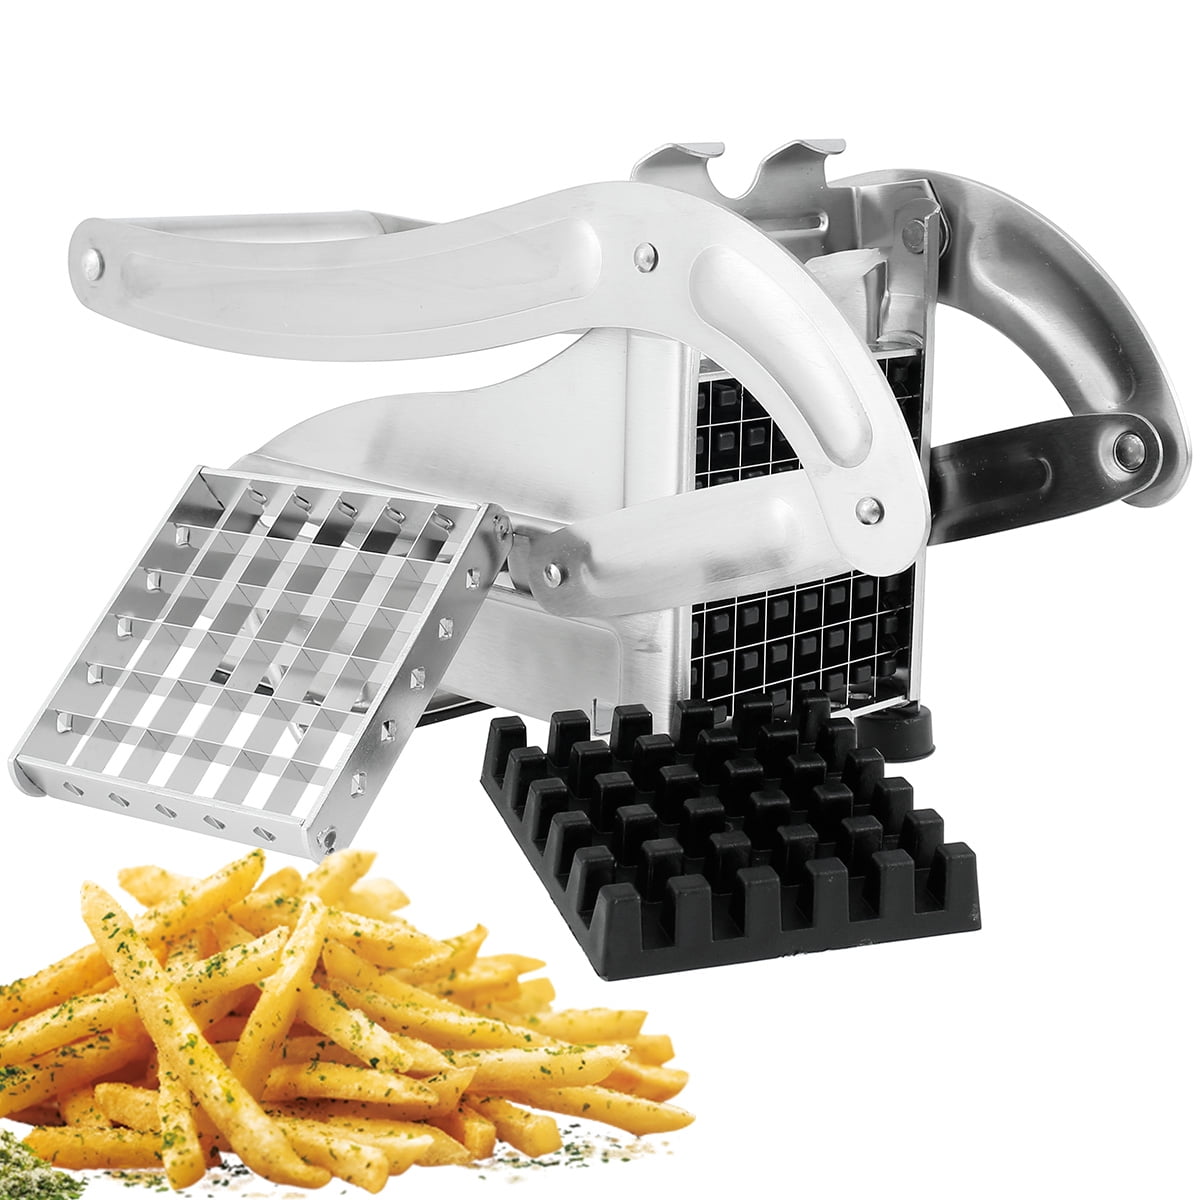 Stainless Steel Potato Grid Potato Chip Cutter, Potato Chip Slicer, Potato  Shredder For Hotel/Commercial for restaurants/supermarkets/food trucks